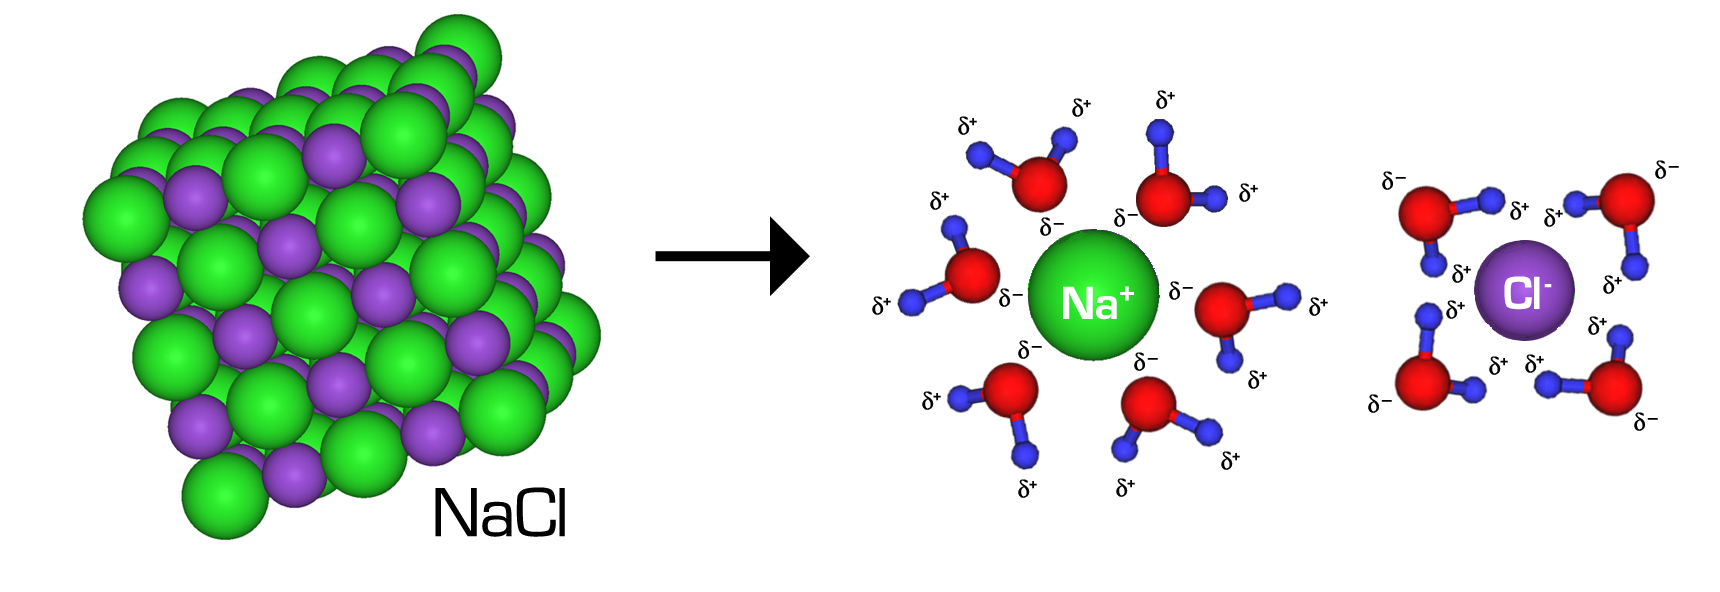 cl ion bonding properties